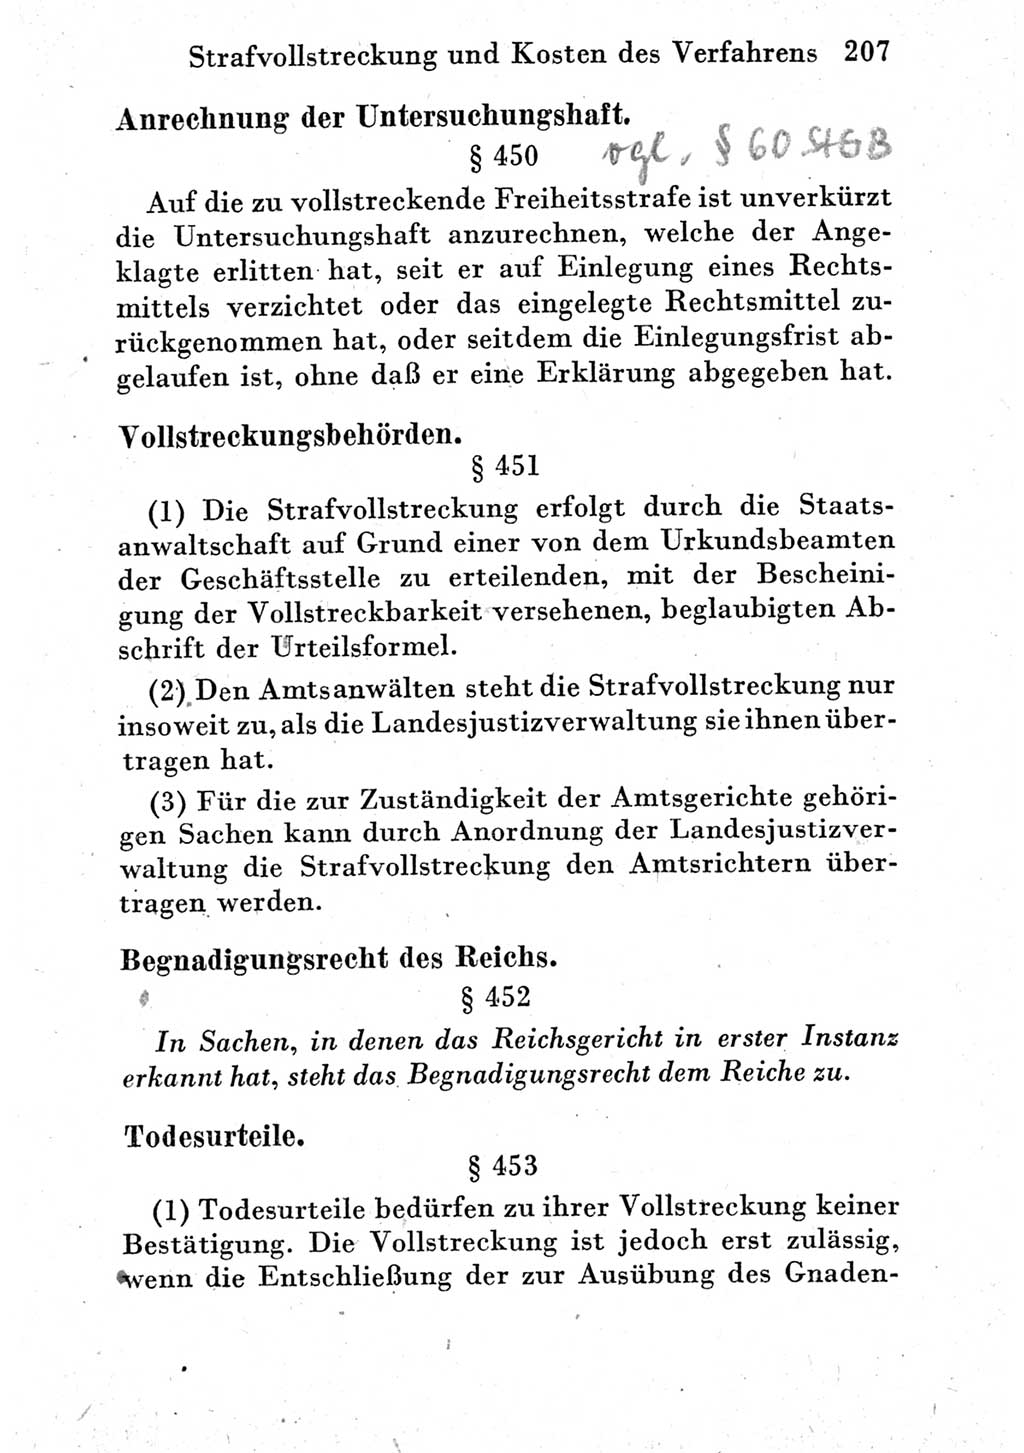 Strafprozeßordnung (StPO), Gerichtsverfassungsgesetz (GVG) und zahlreiche Nebengesetze der Deutschen Demokratischen Republik (DDR) 1950, Seite 207 (StPO GVG Ges. DDR 1950, S. 207)